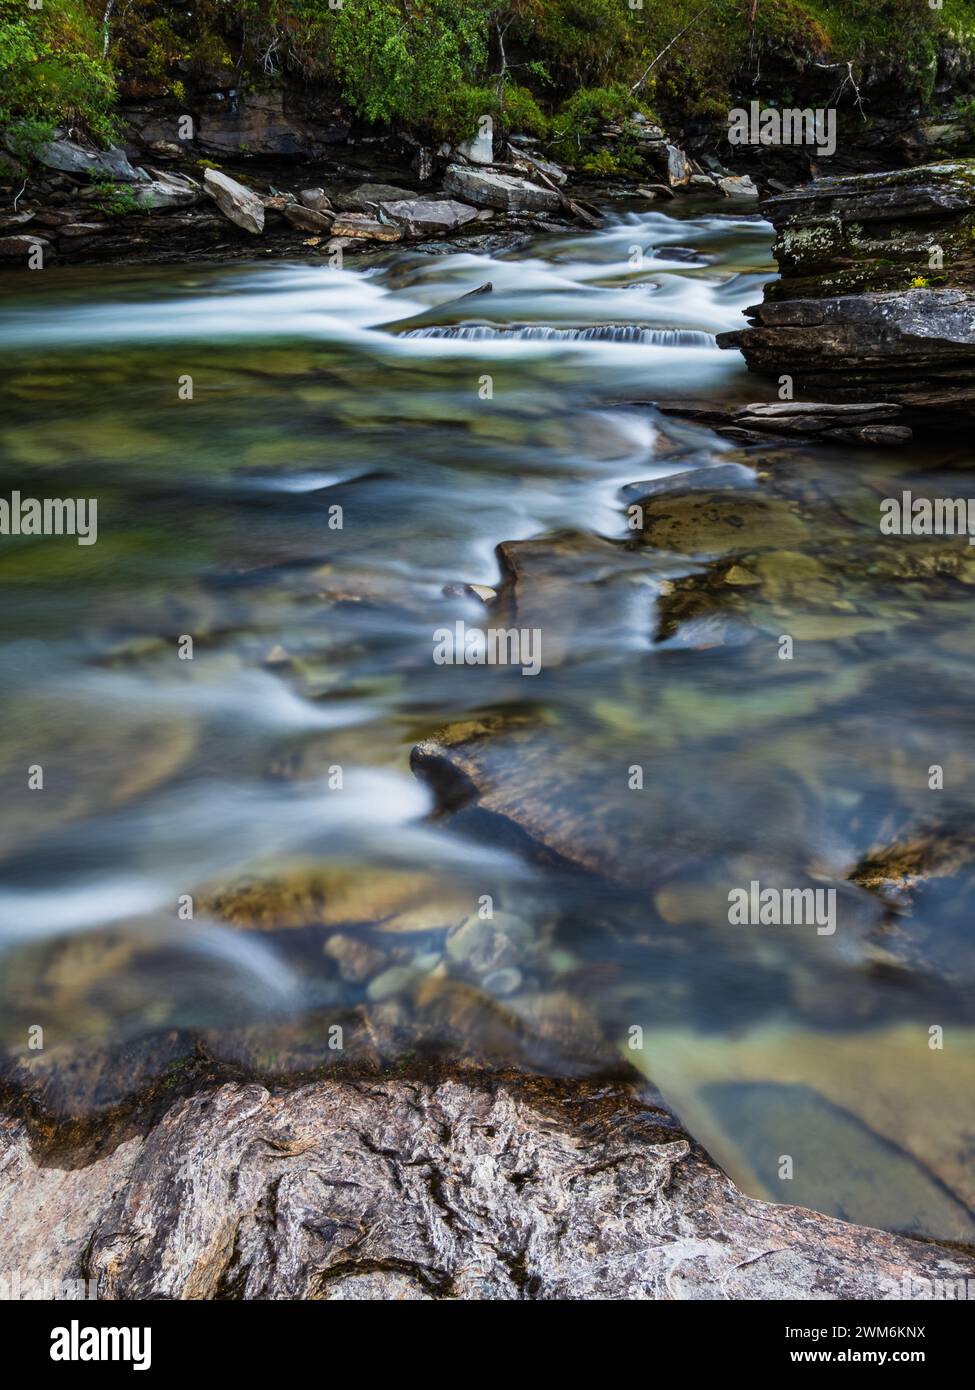 La paisible rivière Ljusnan serpente à travers le paysage accidenté de Härjedalen, son eau cascadant sur des rochers et des galets. La lumière tamisée et douce Banque D'Images